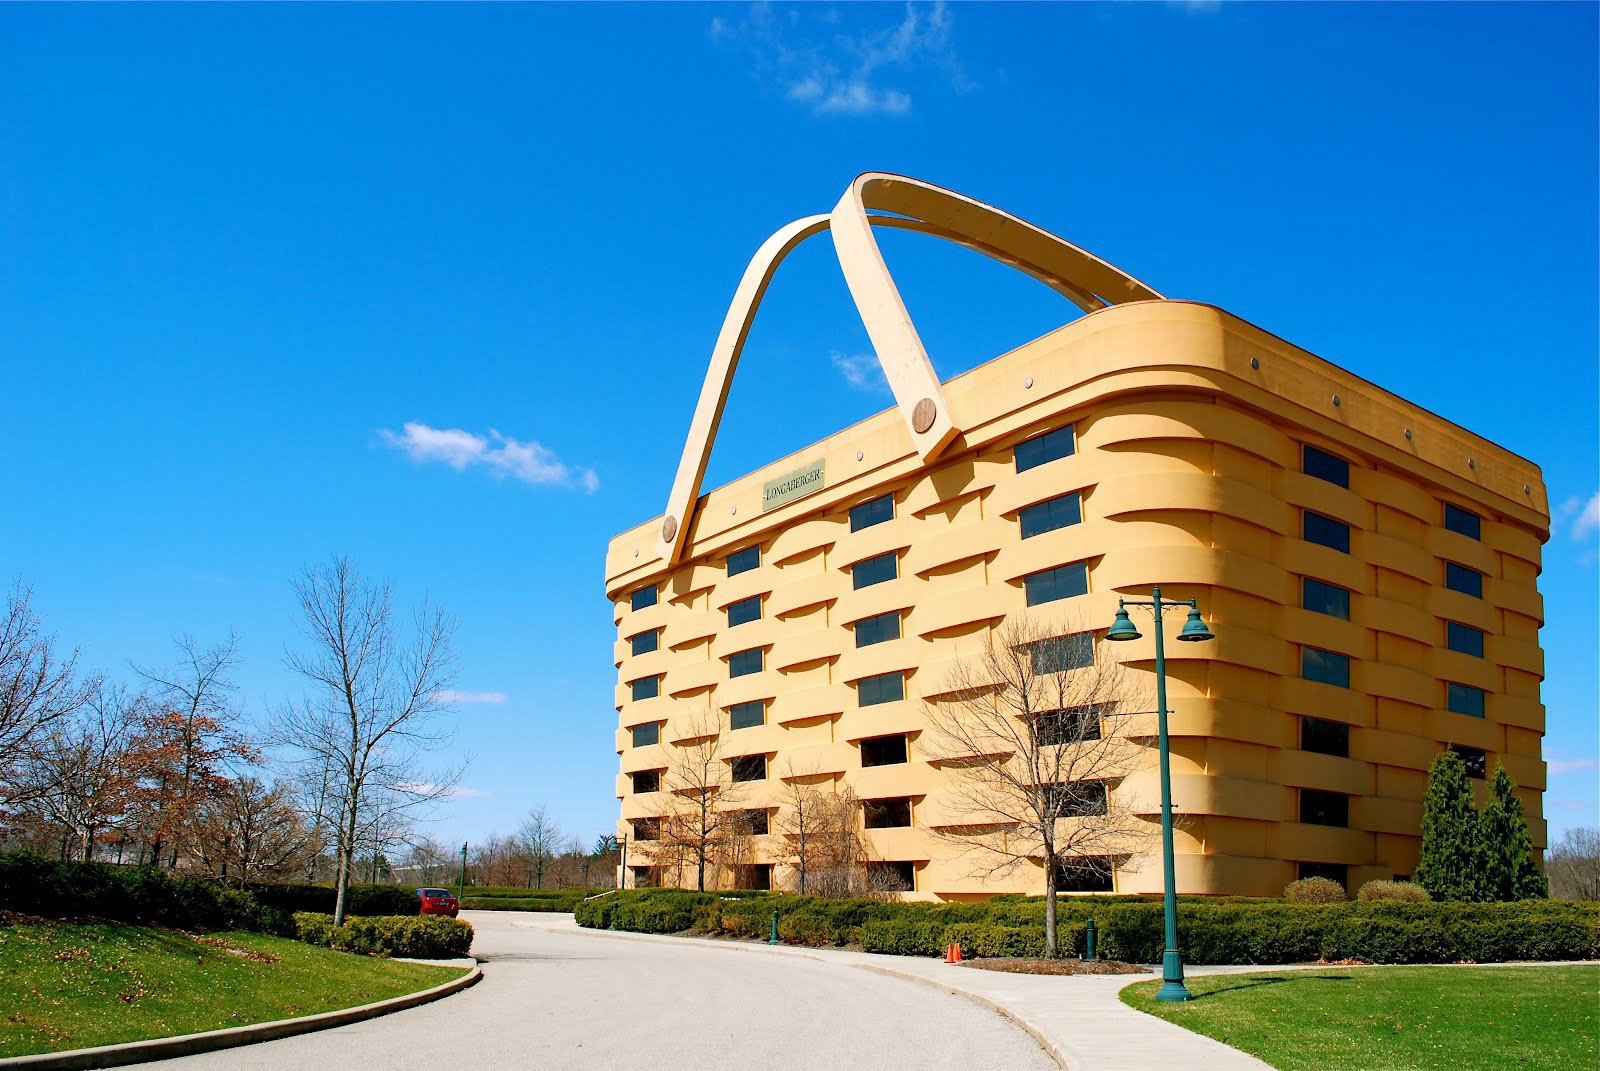 Самой необычное в мире. Здание-корзина (the Basket building), Огайо, США. Штаб квартира Longaberger — Ньюарк, штат Огайо, США. Дом-корзина (Ньюарк, штат Огайо, США). Здание корзина штат Огайо США.